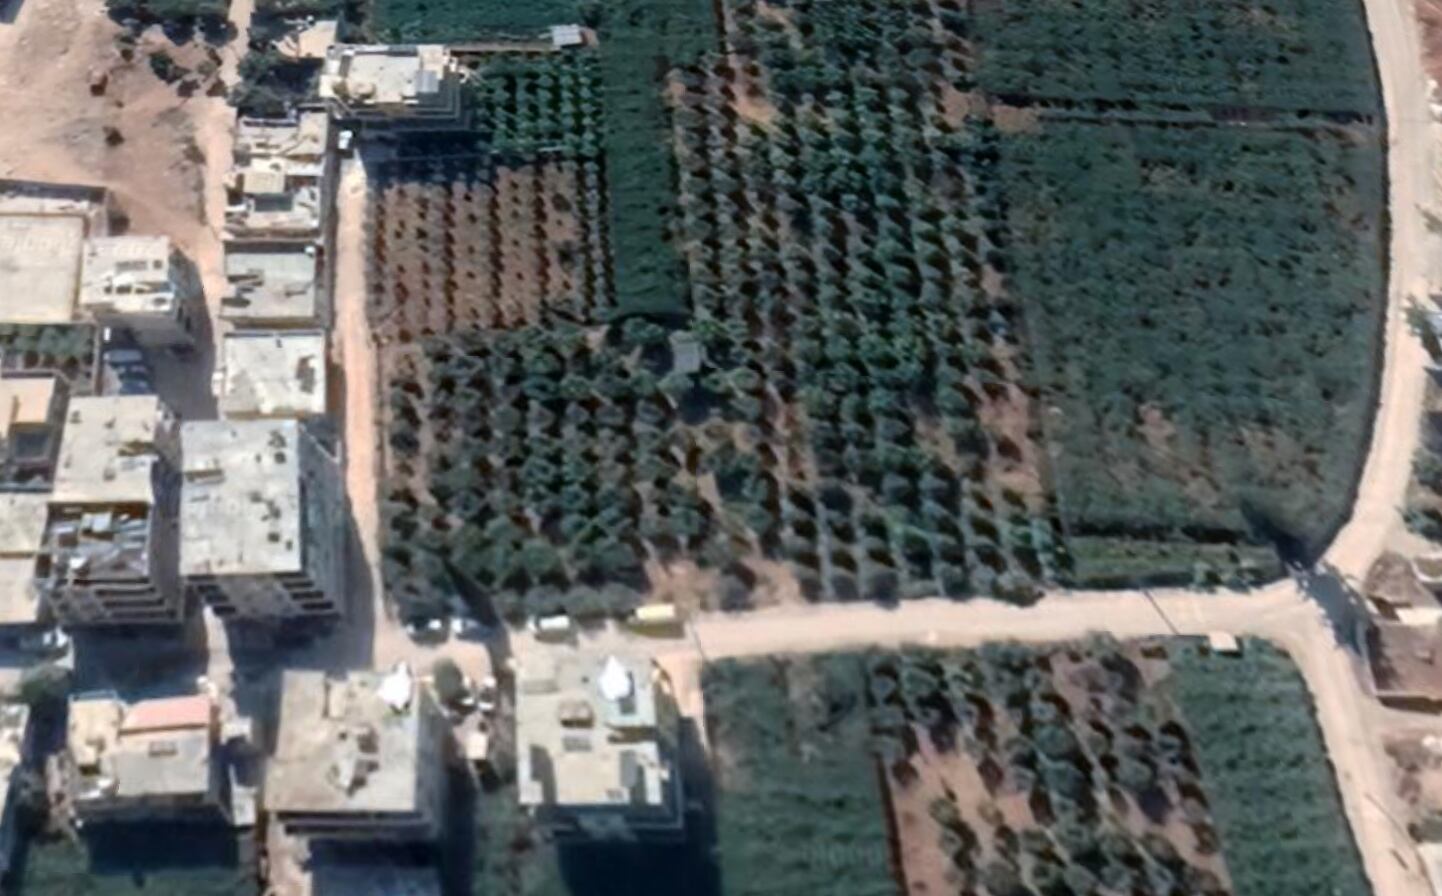 Provincia de Idlib, Siria, antes del terremoto de 7.8 grados de este 6 de febrero. (Imagen tomada de Google Earth)